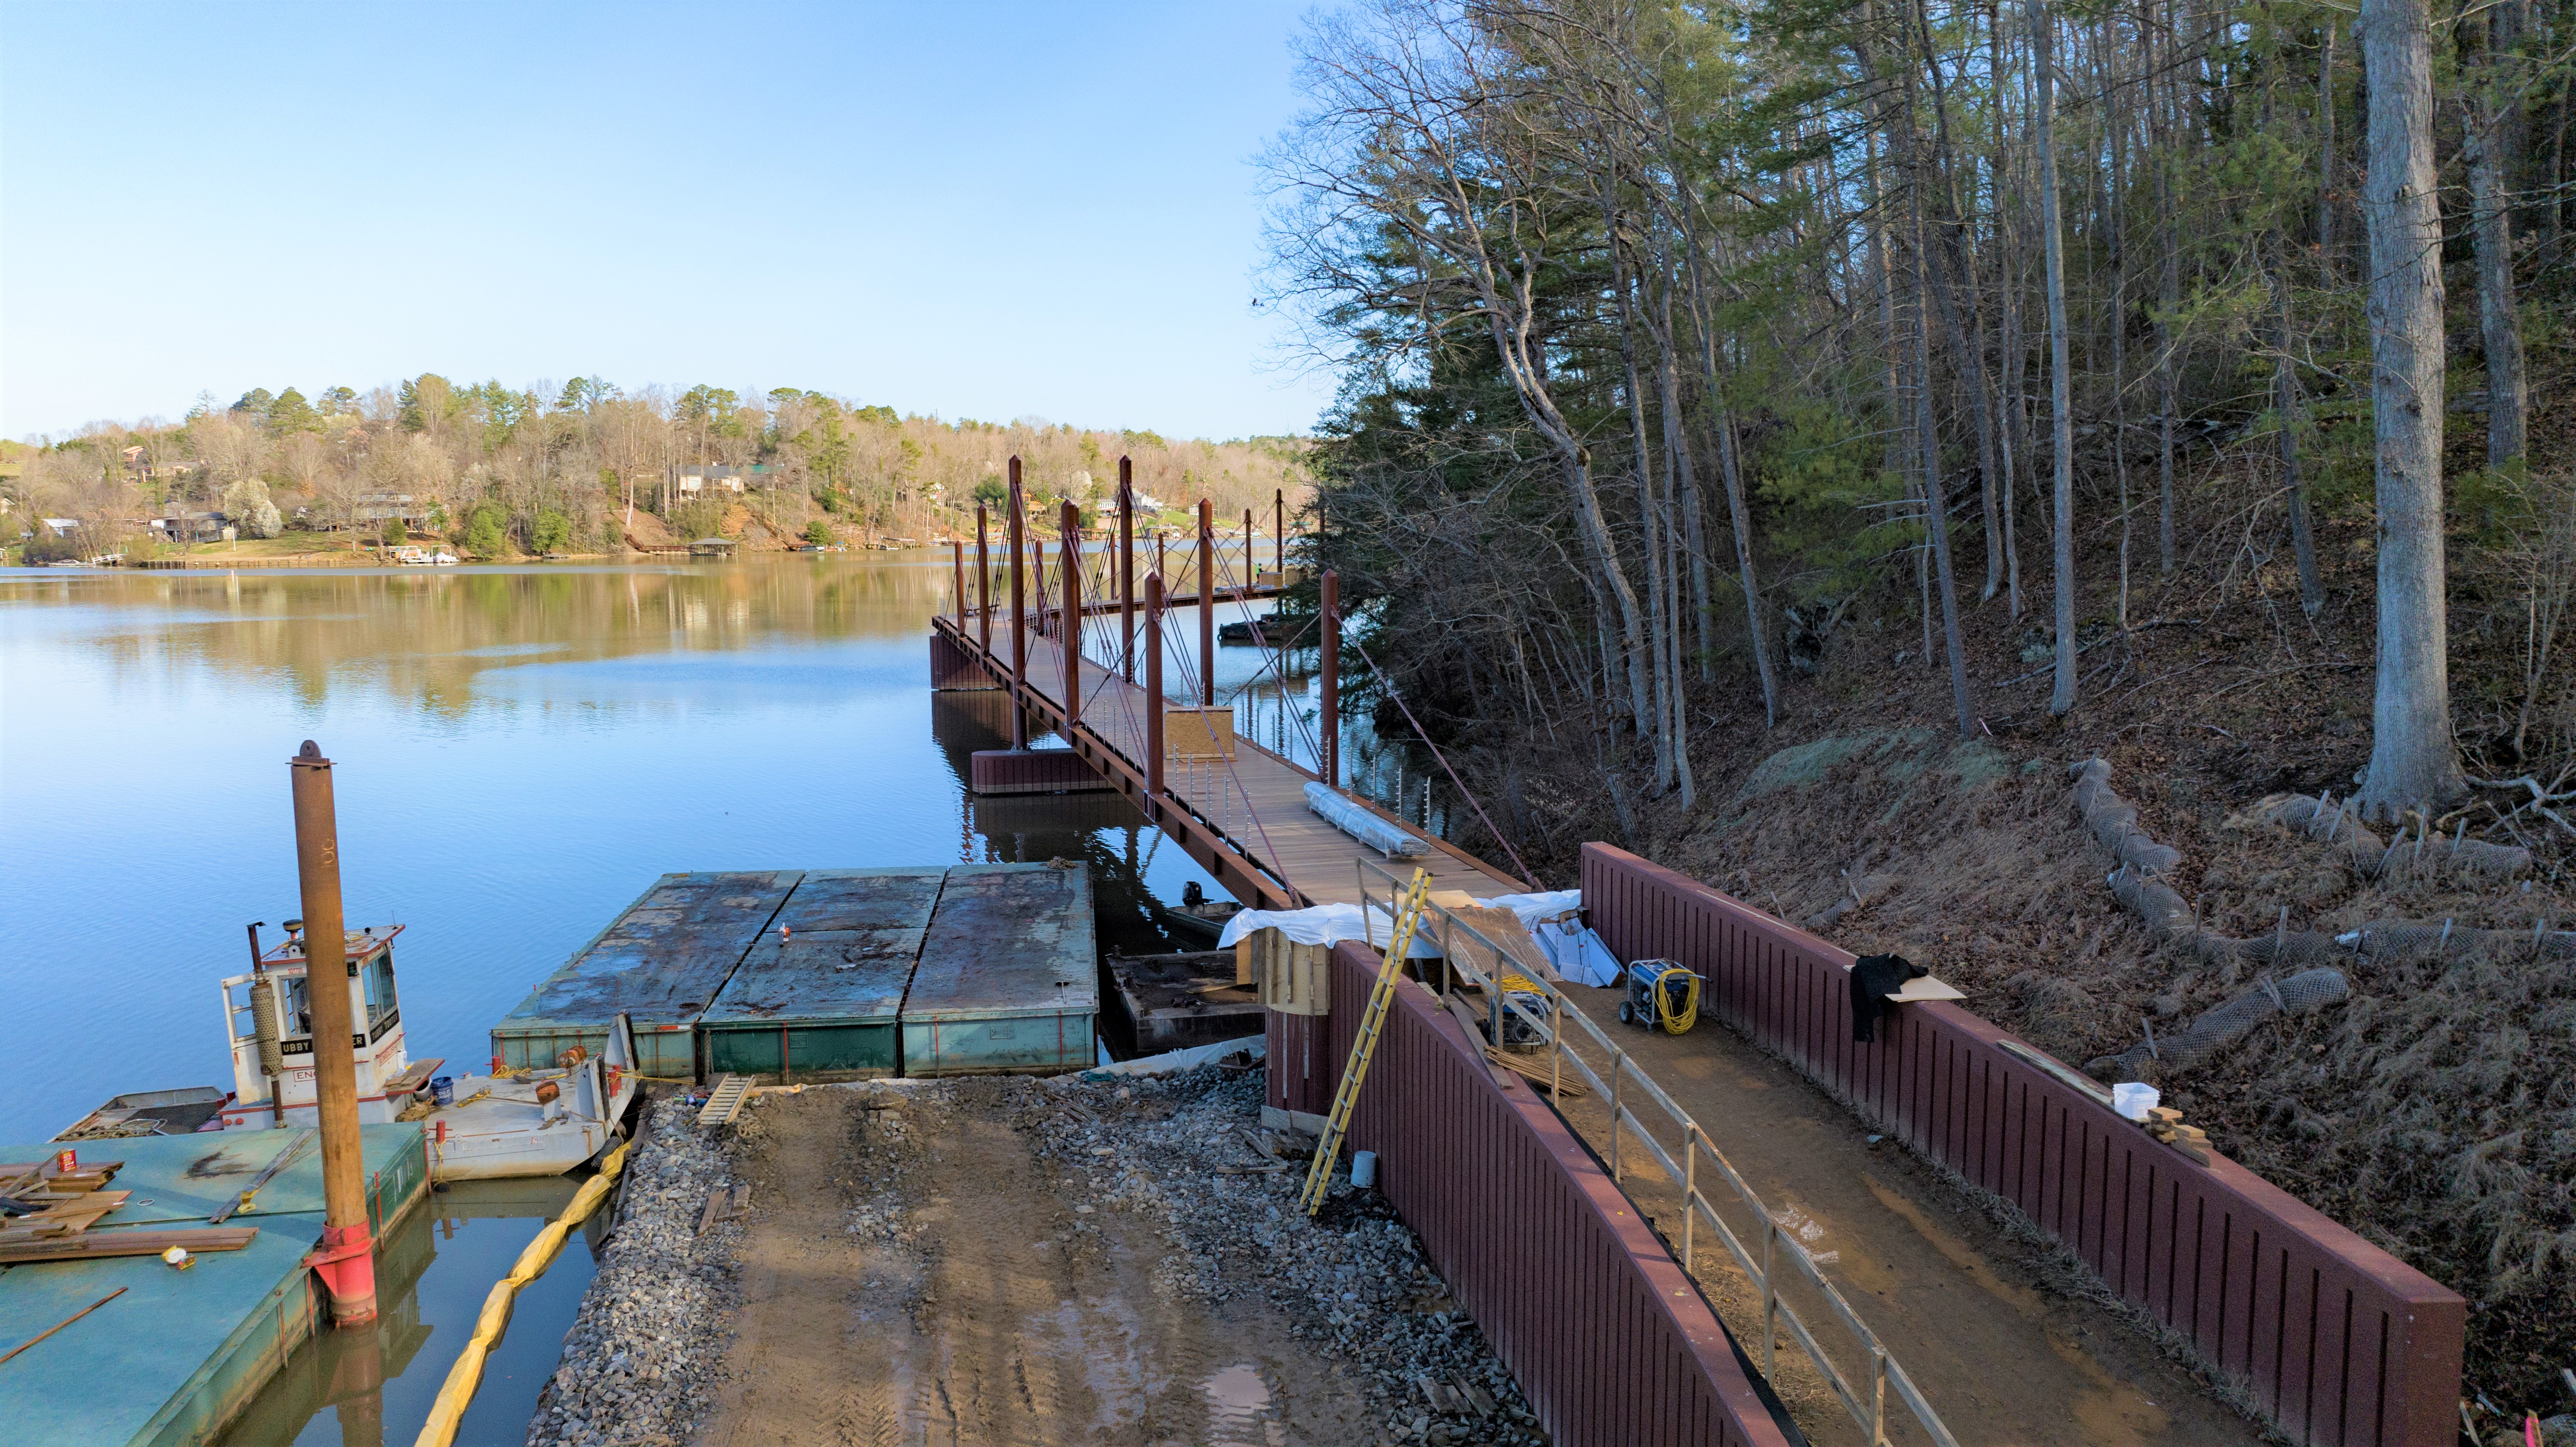 Connection to Riverwalk overwater bridge under construction